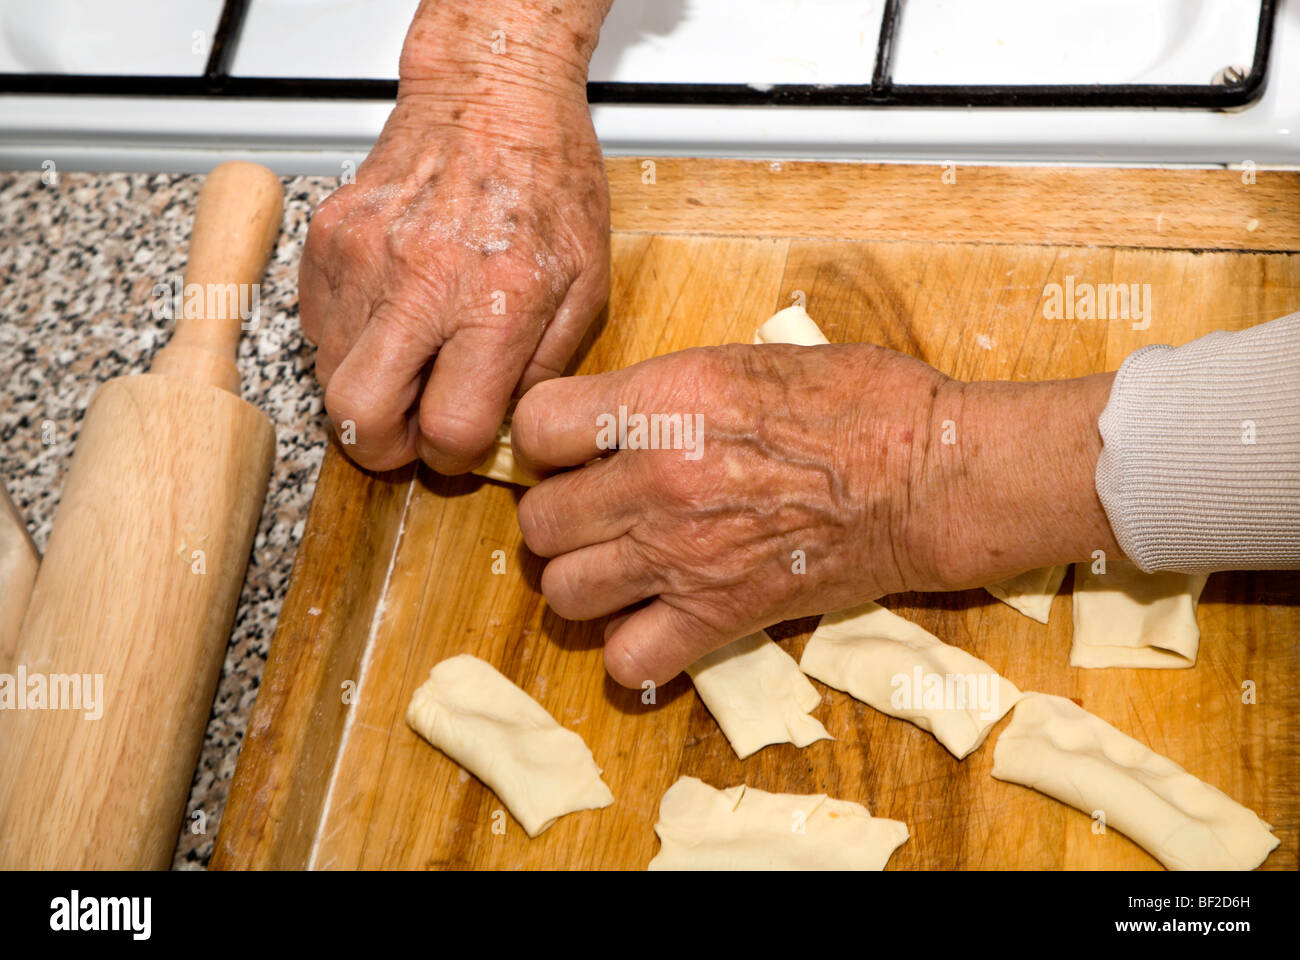 Mains de vieille femme par la cuisson Banque D'Images